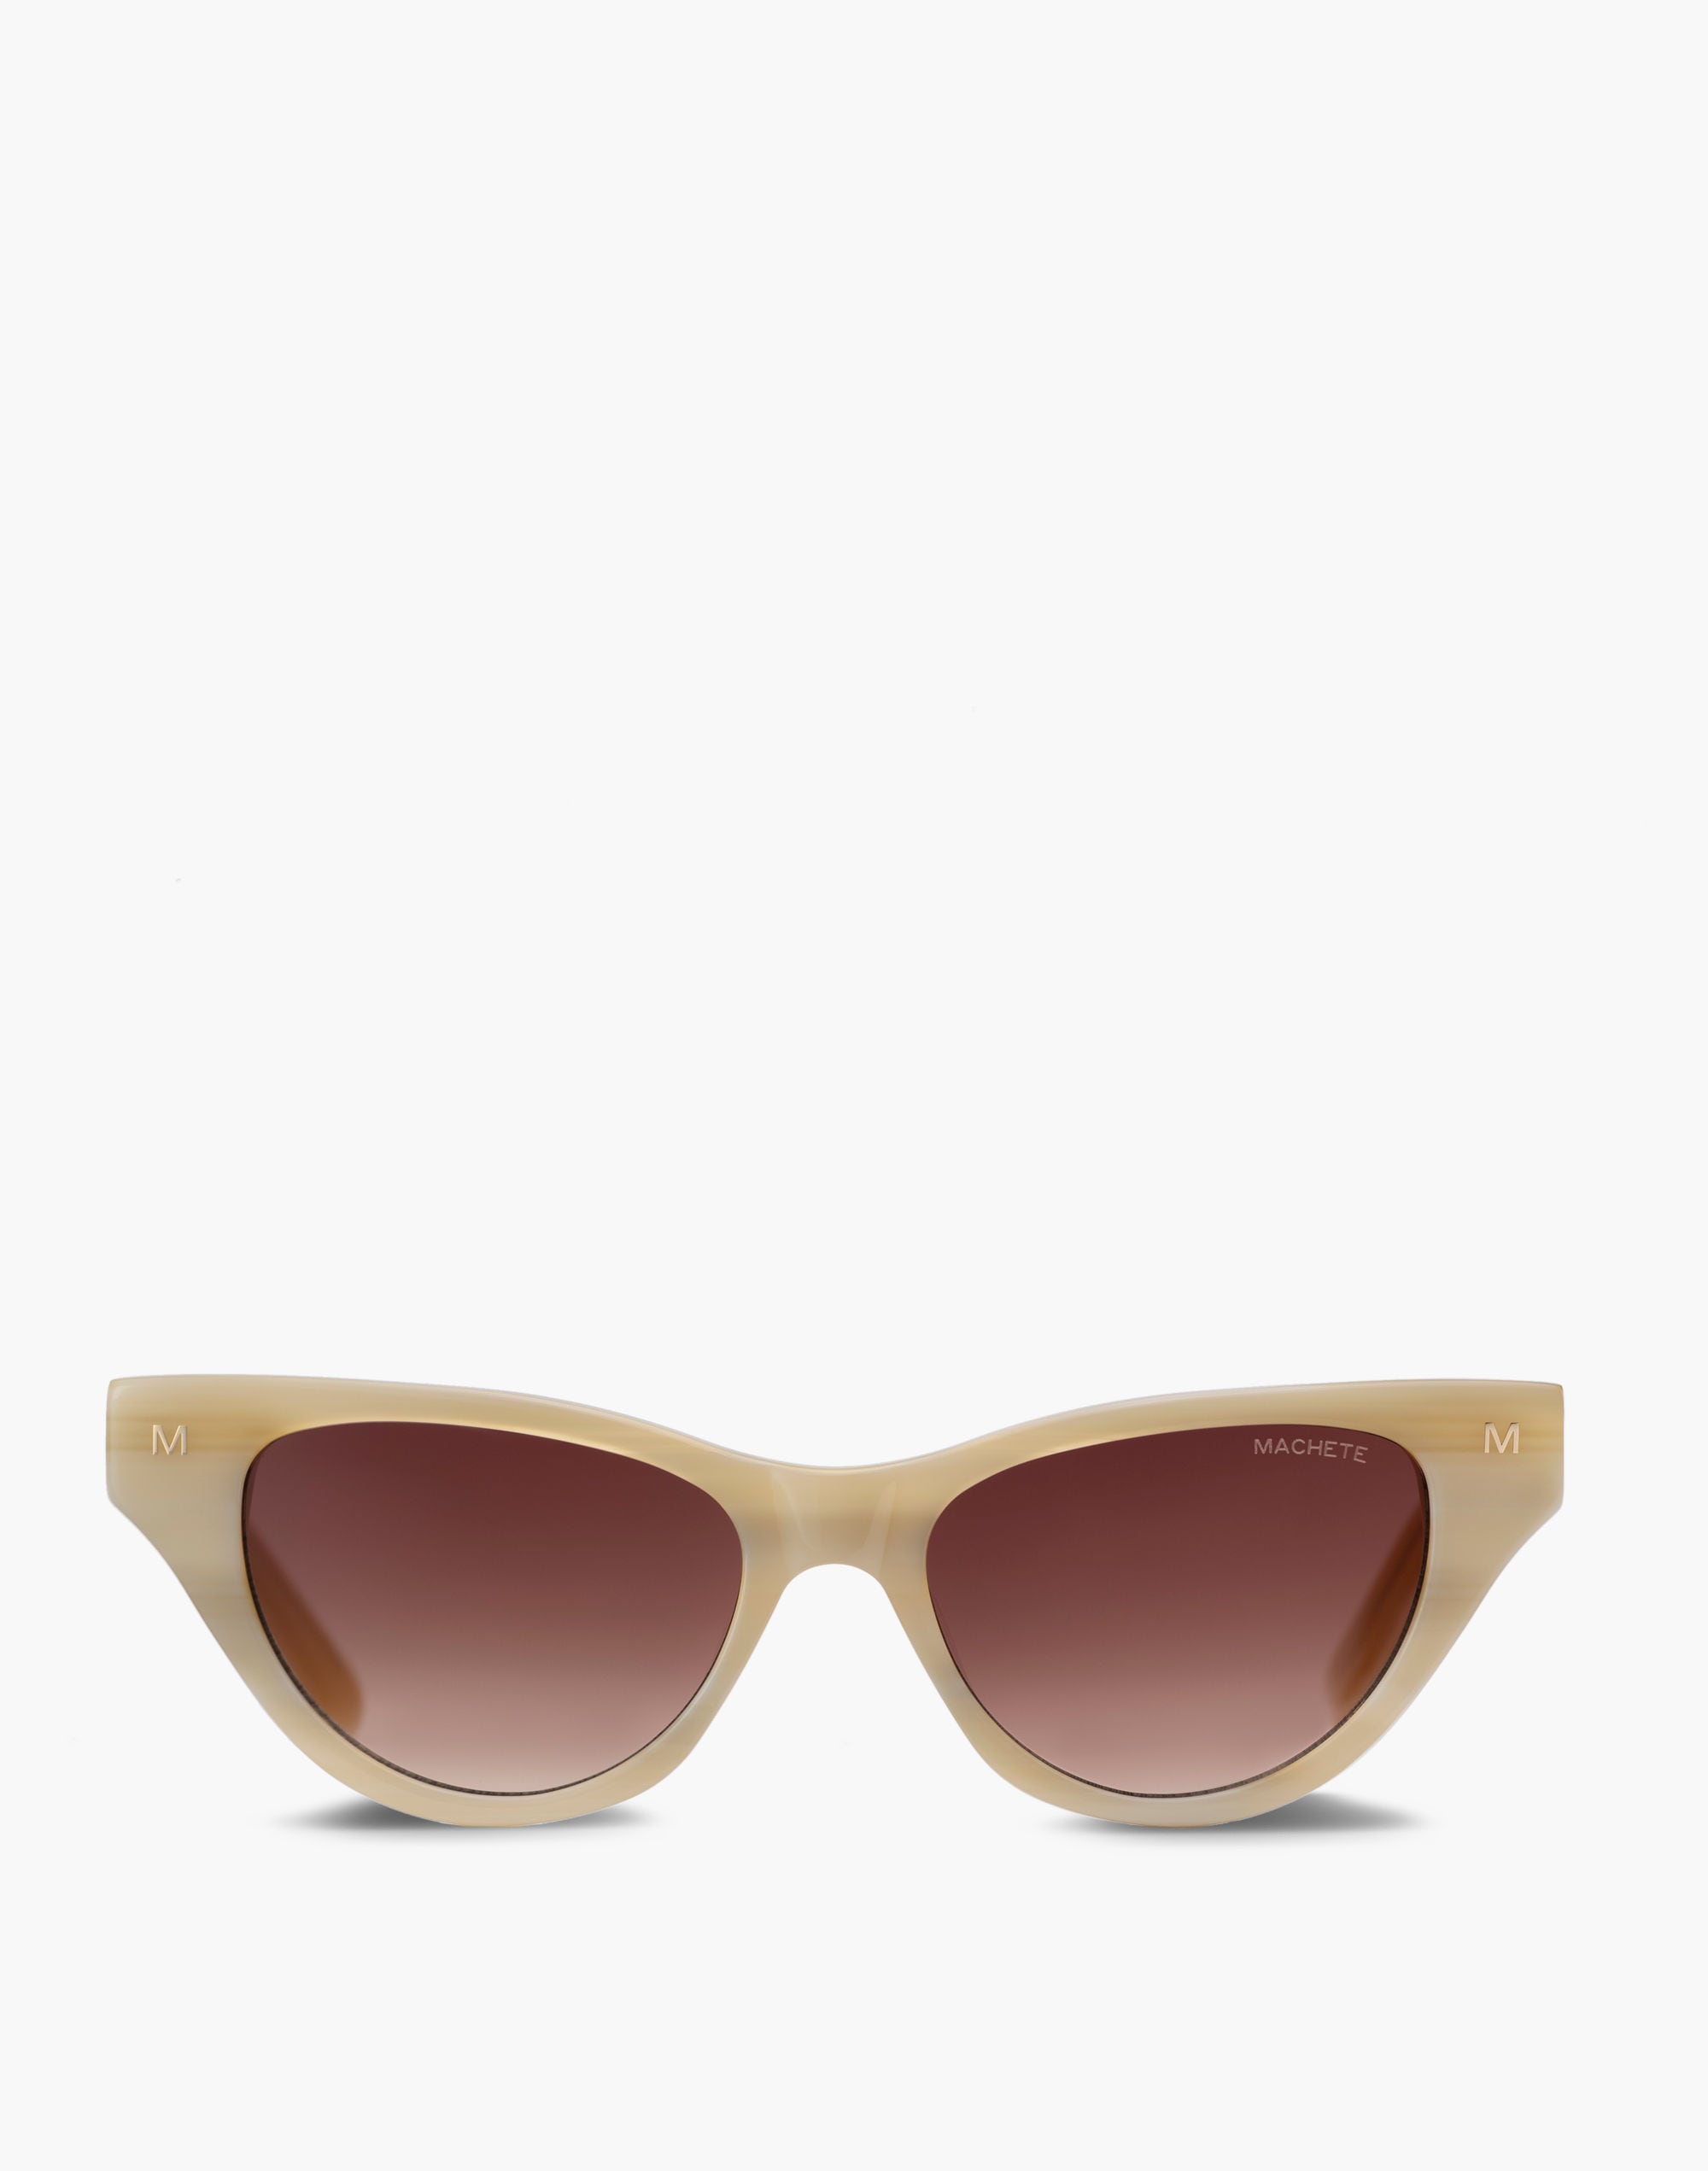 Mw Machete Suzy Sunglasses In Cream